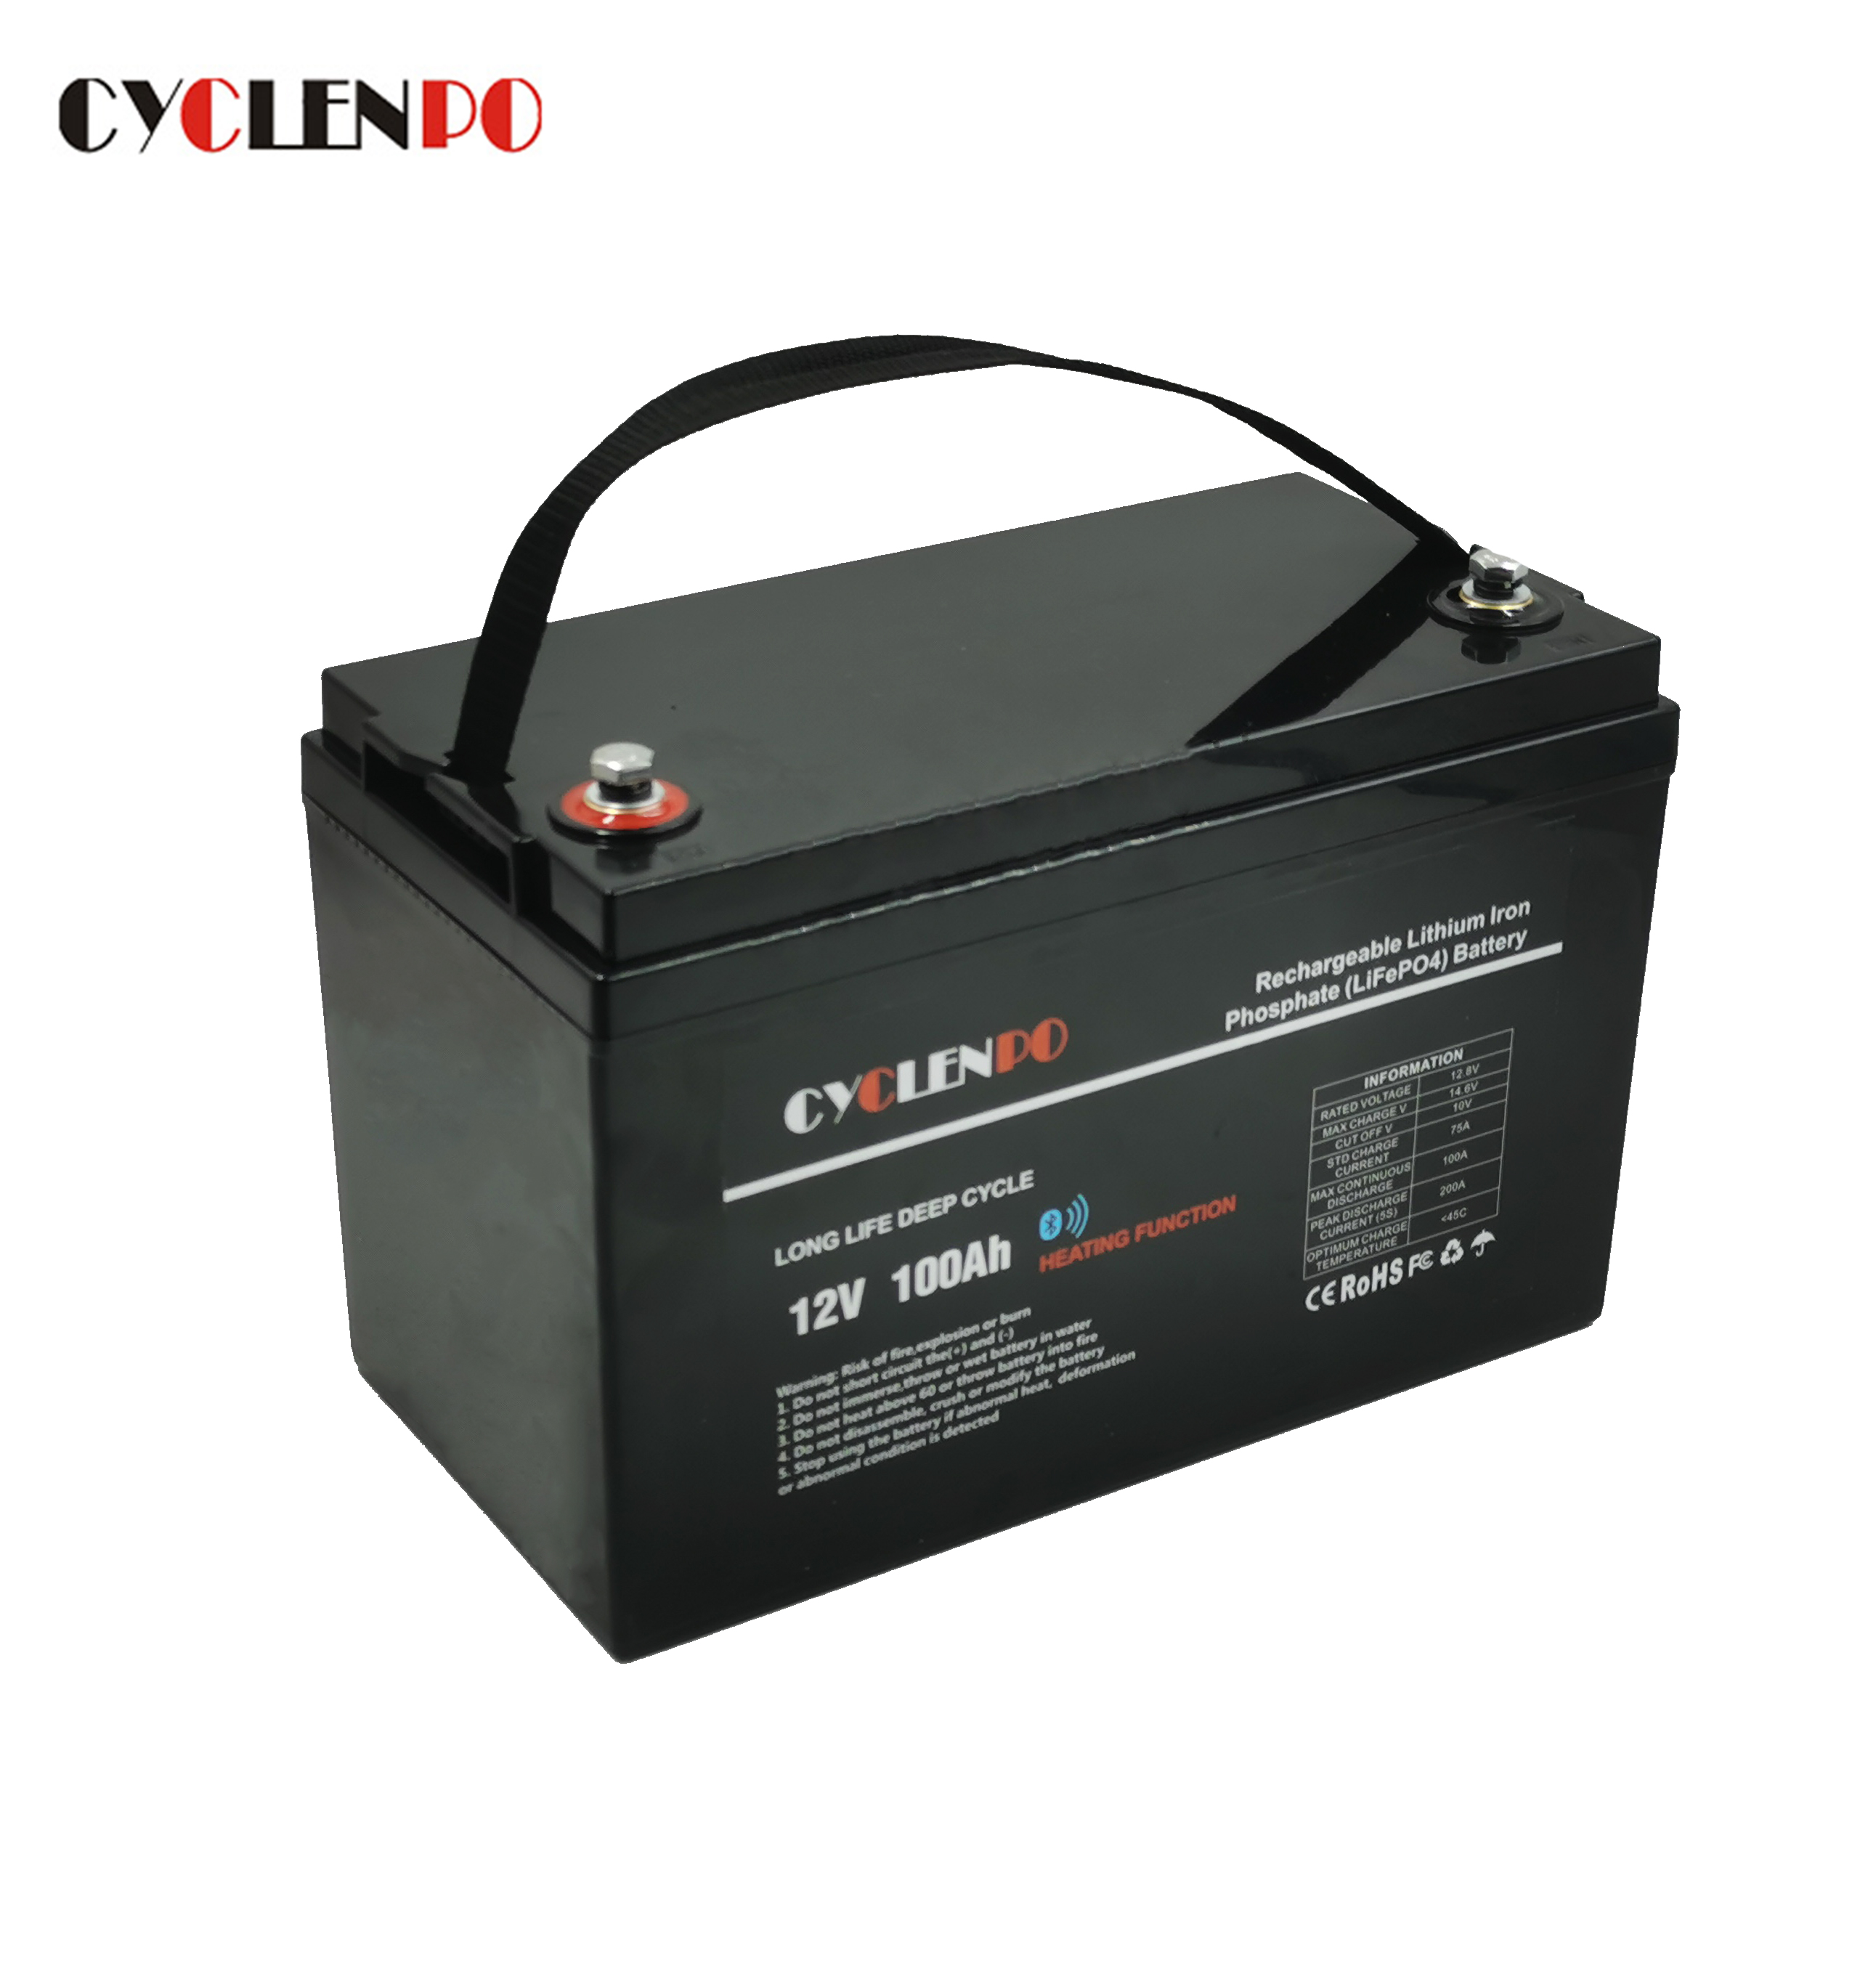 Bateria de íon lítio auto-aquecida LiFePO4 12V 100Ah